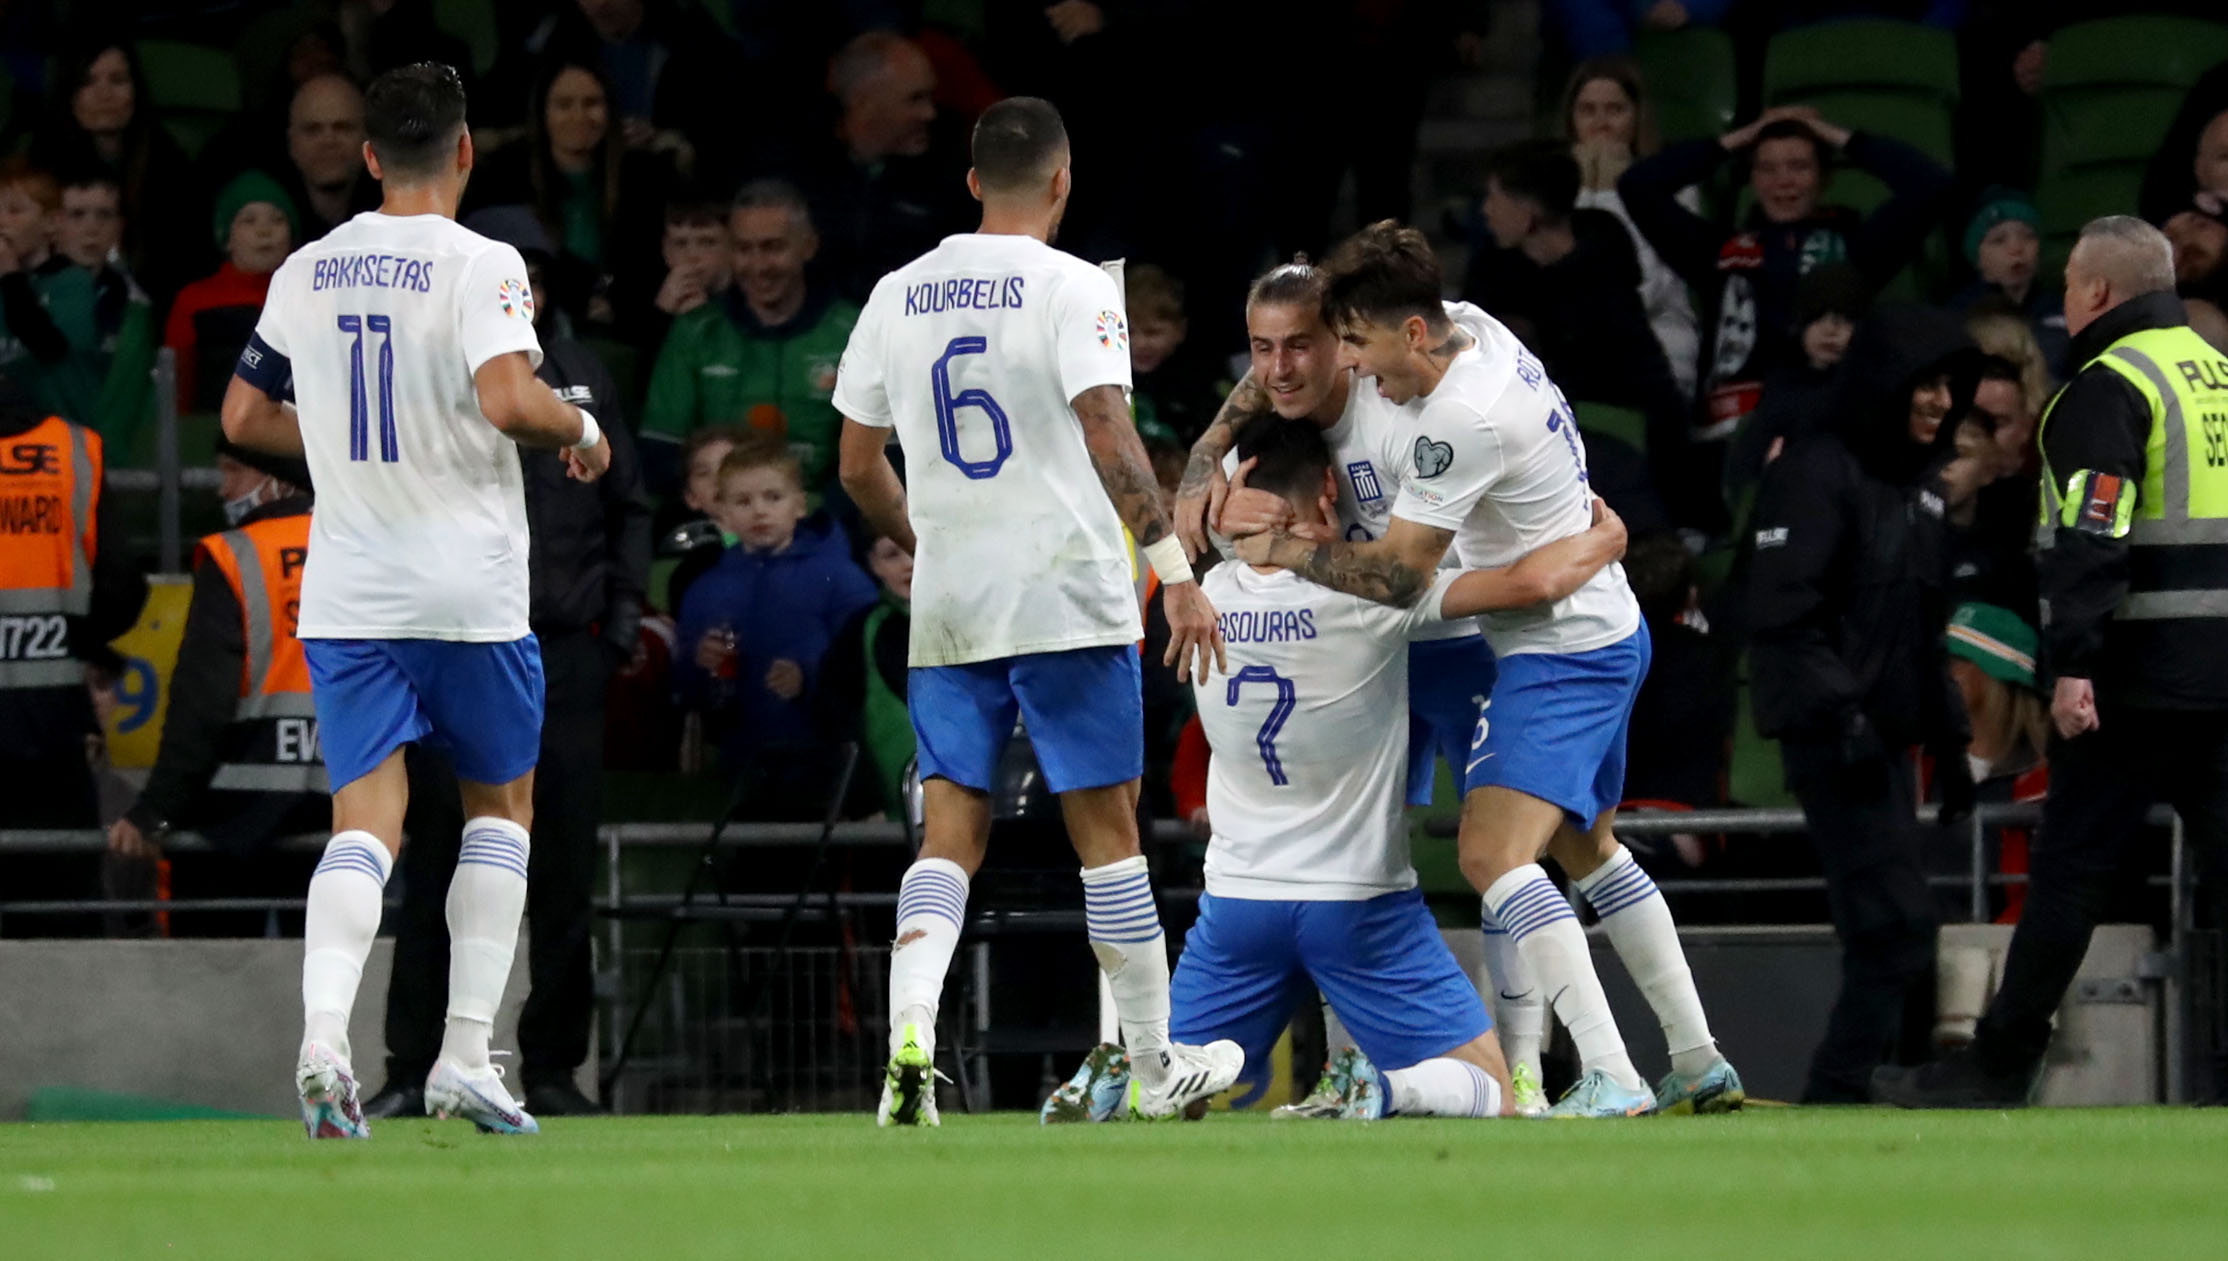 Ιρλανδία - Ελλάδα 0-2: Πέρασε από το Δουβλίνο με πρωταγωνιστές Γιακουμάκη - Μασούρα και πάει για τελικό με Ολλανδία